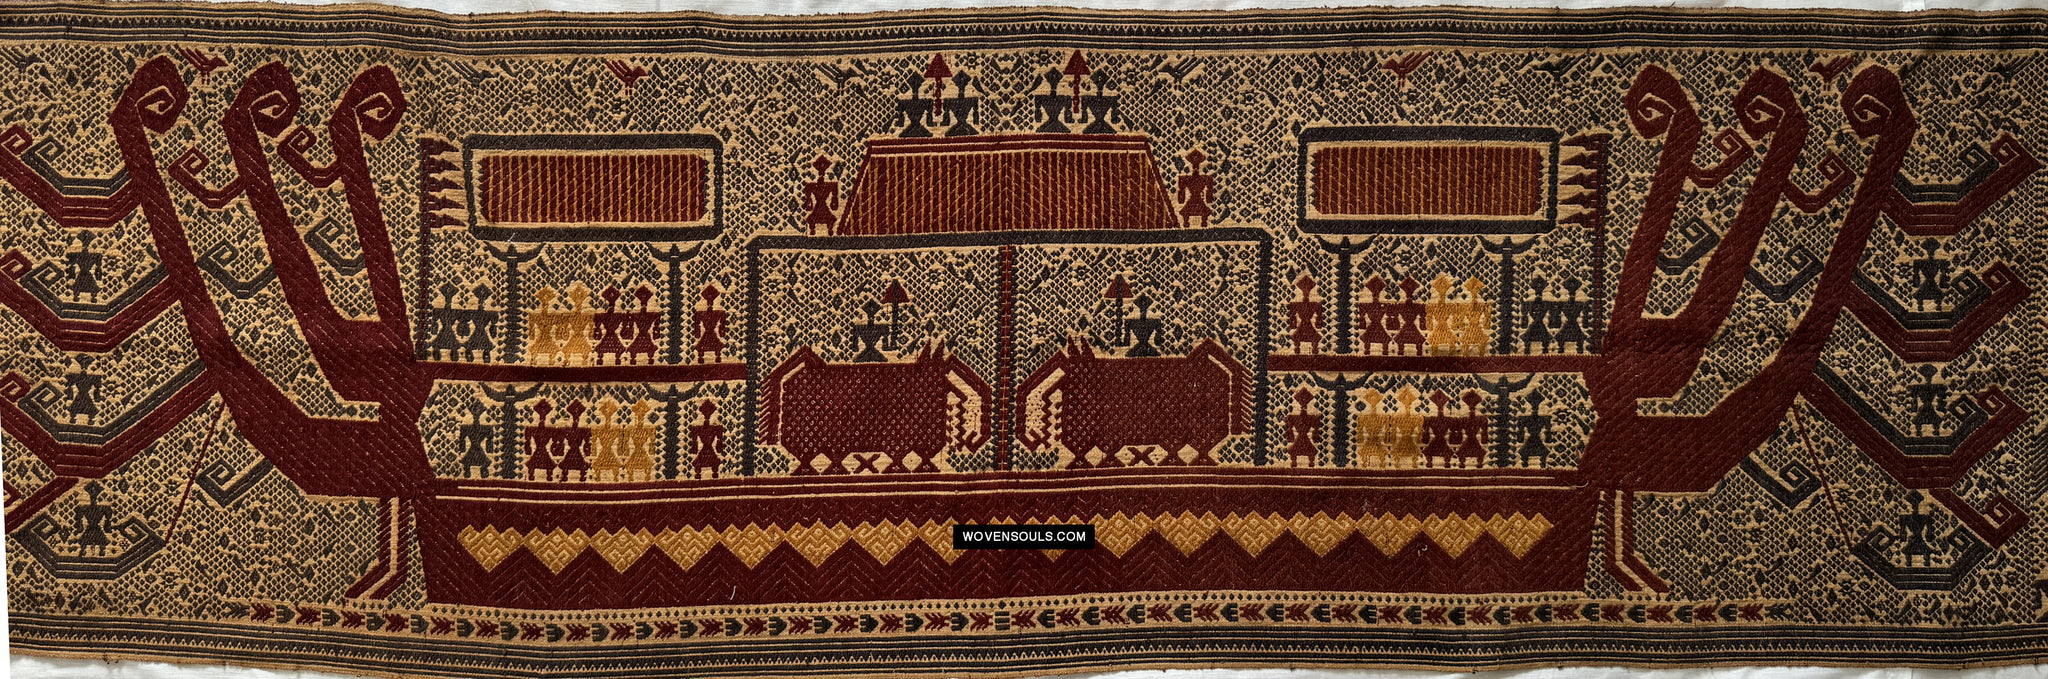 413 Palepai Tampan Ship Cloth from Lampung Sumatra